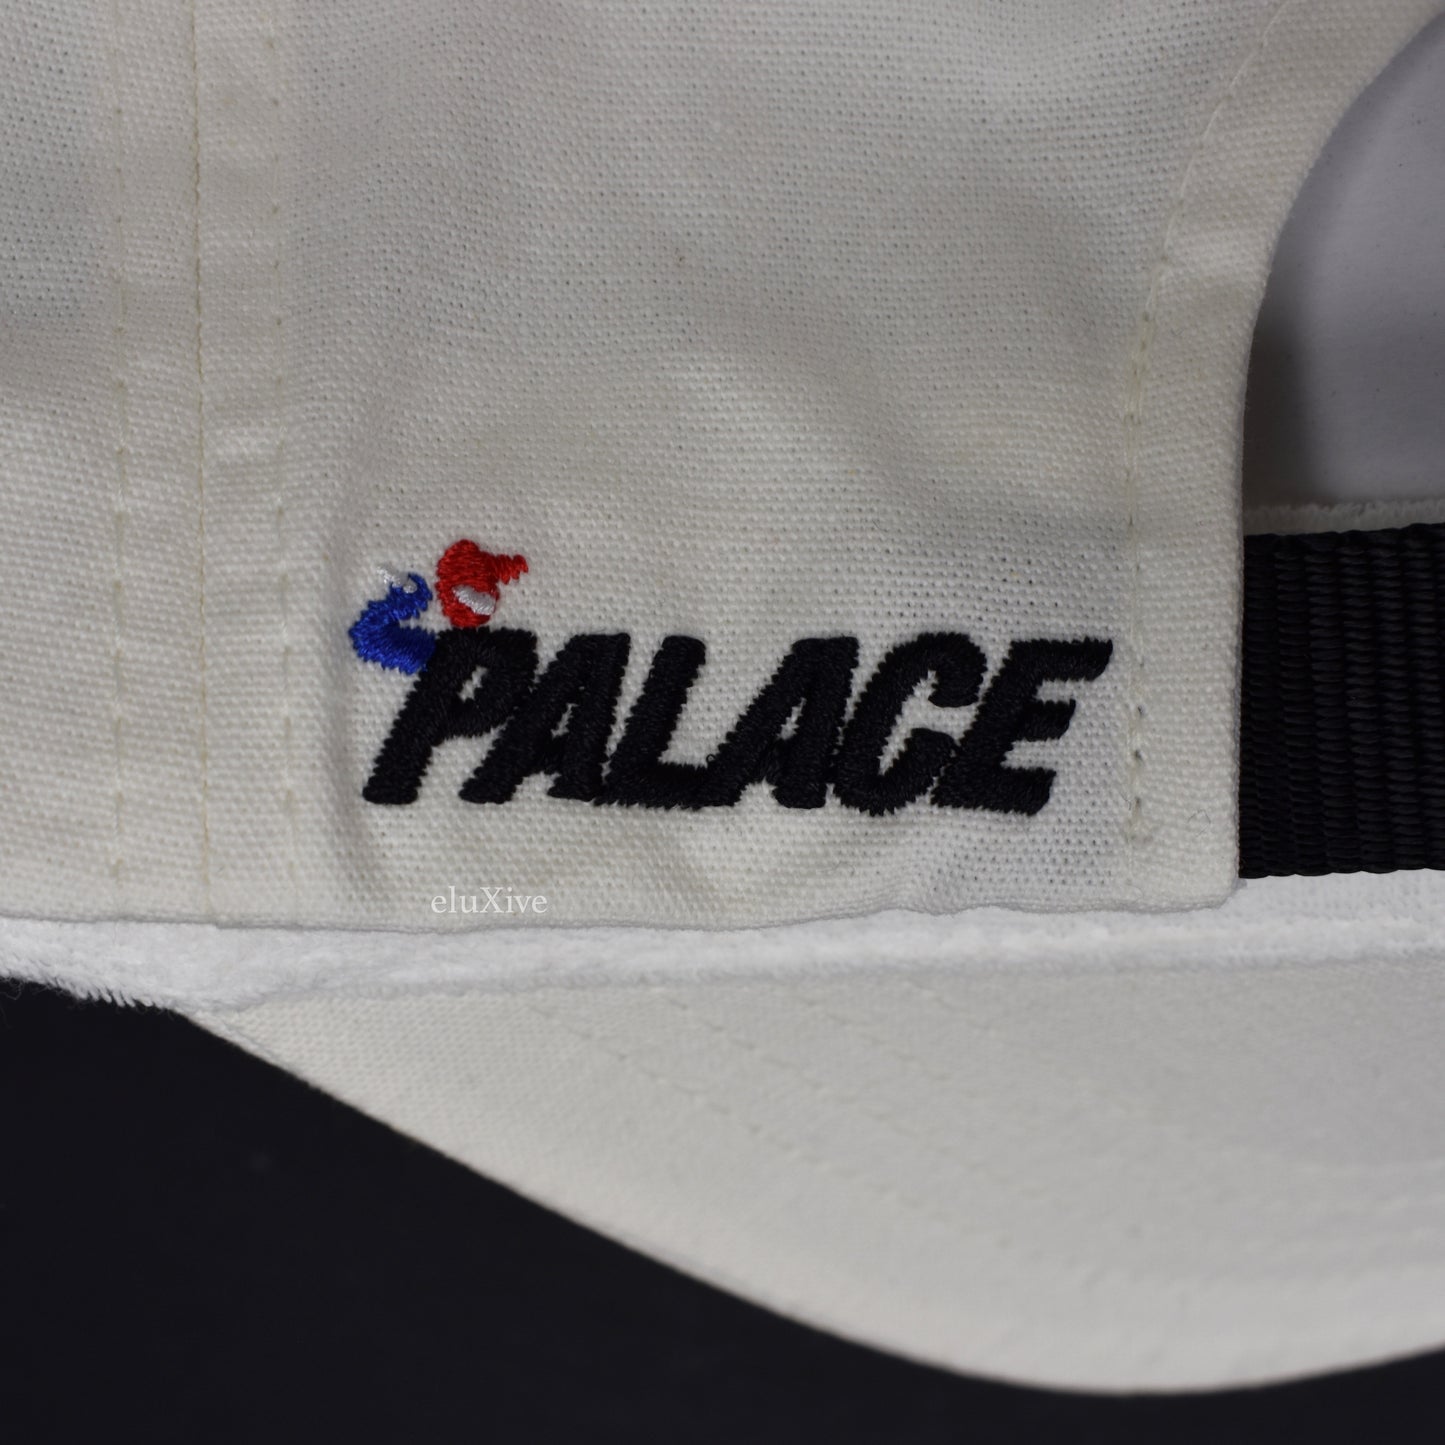 Palace - Running Man P-Logo 'Bunning' Hat (White)